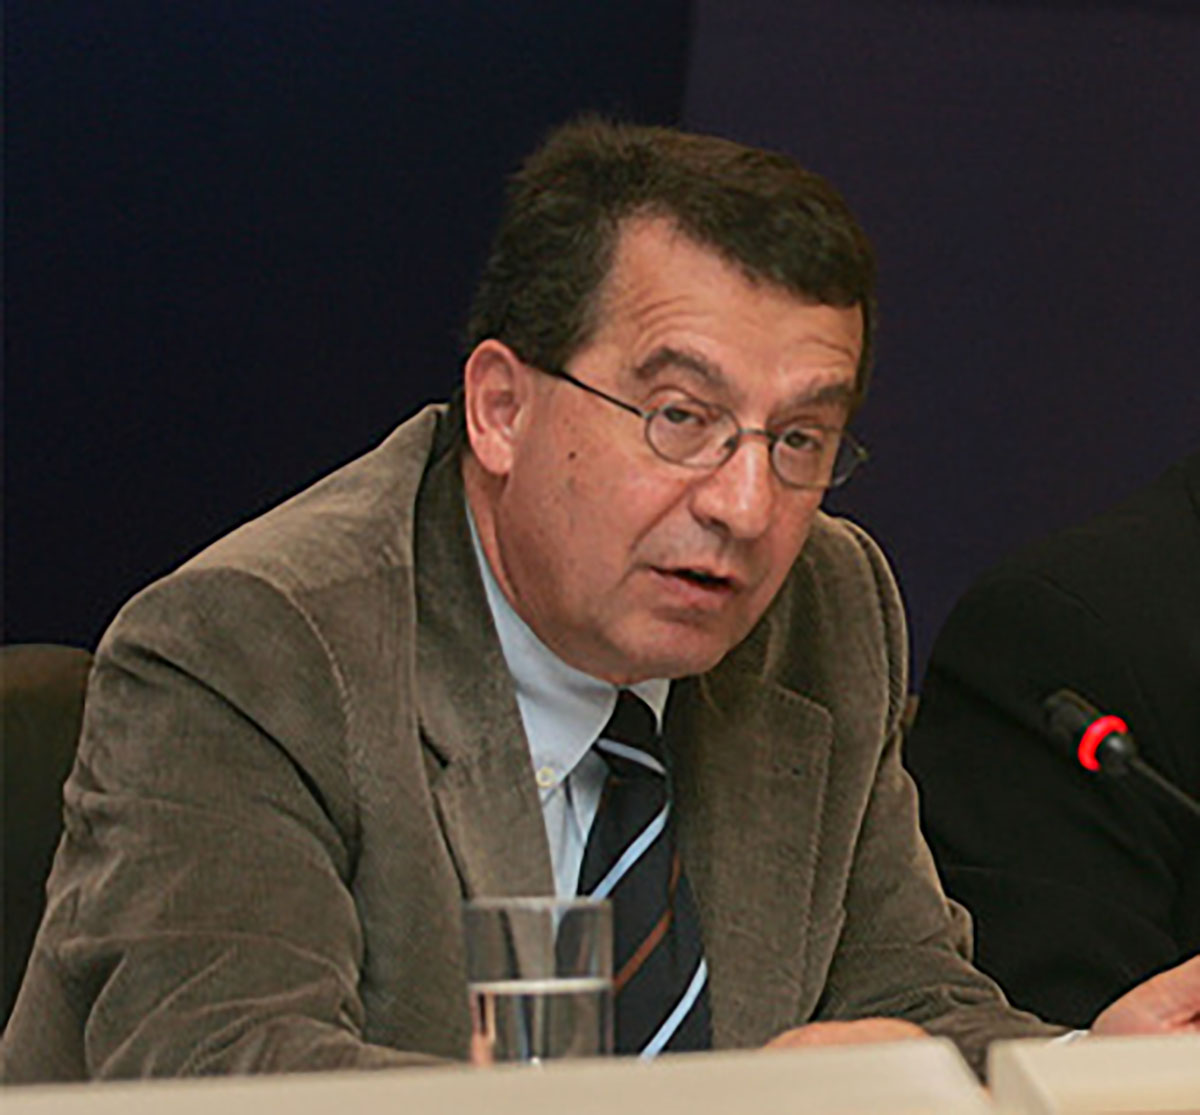 Εξεταστική Επιτροπή: Ο Ρουμπάτης φέρεται να είπε ότι ενημέρωσε τον Τσίπρα για την παρακολούθηση Πιτσιόρλα χωρίς να τον κατονομάσει